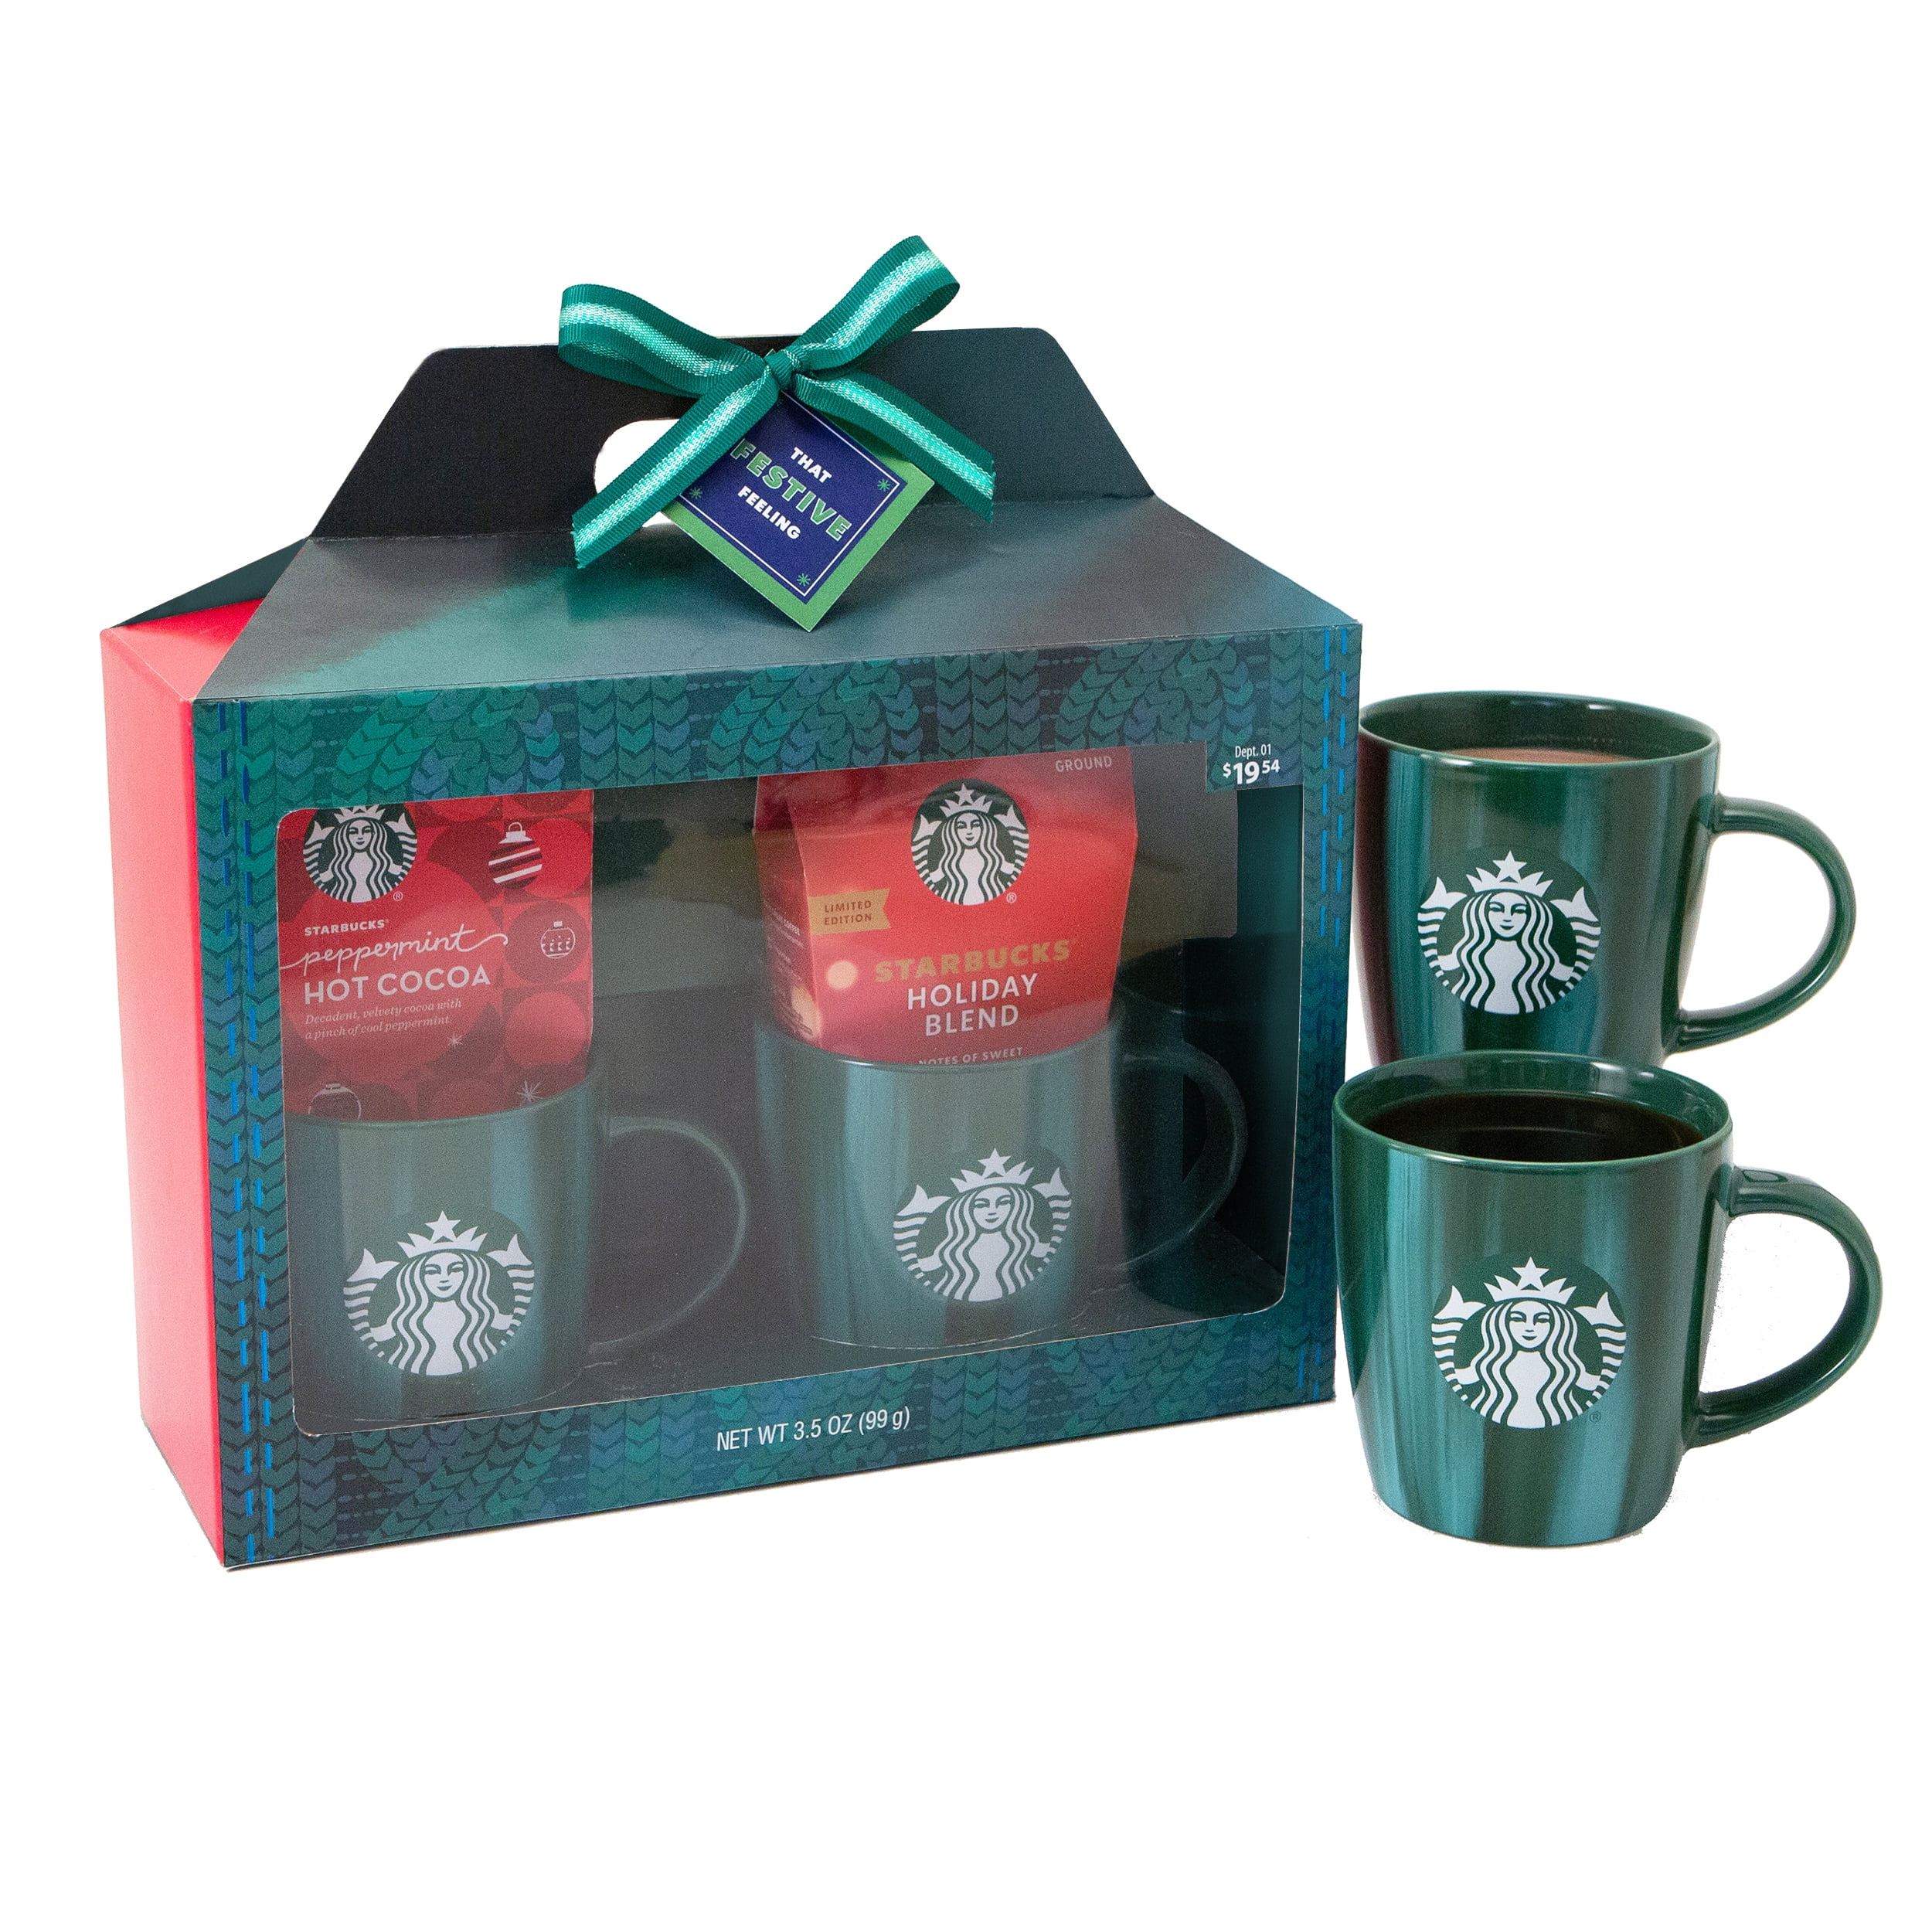 Set of 2 Starbucks Christmas Coffee Mug Gift Sets